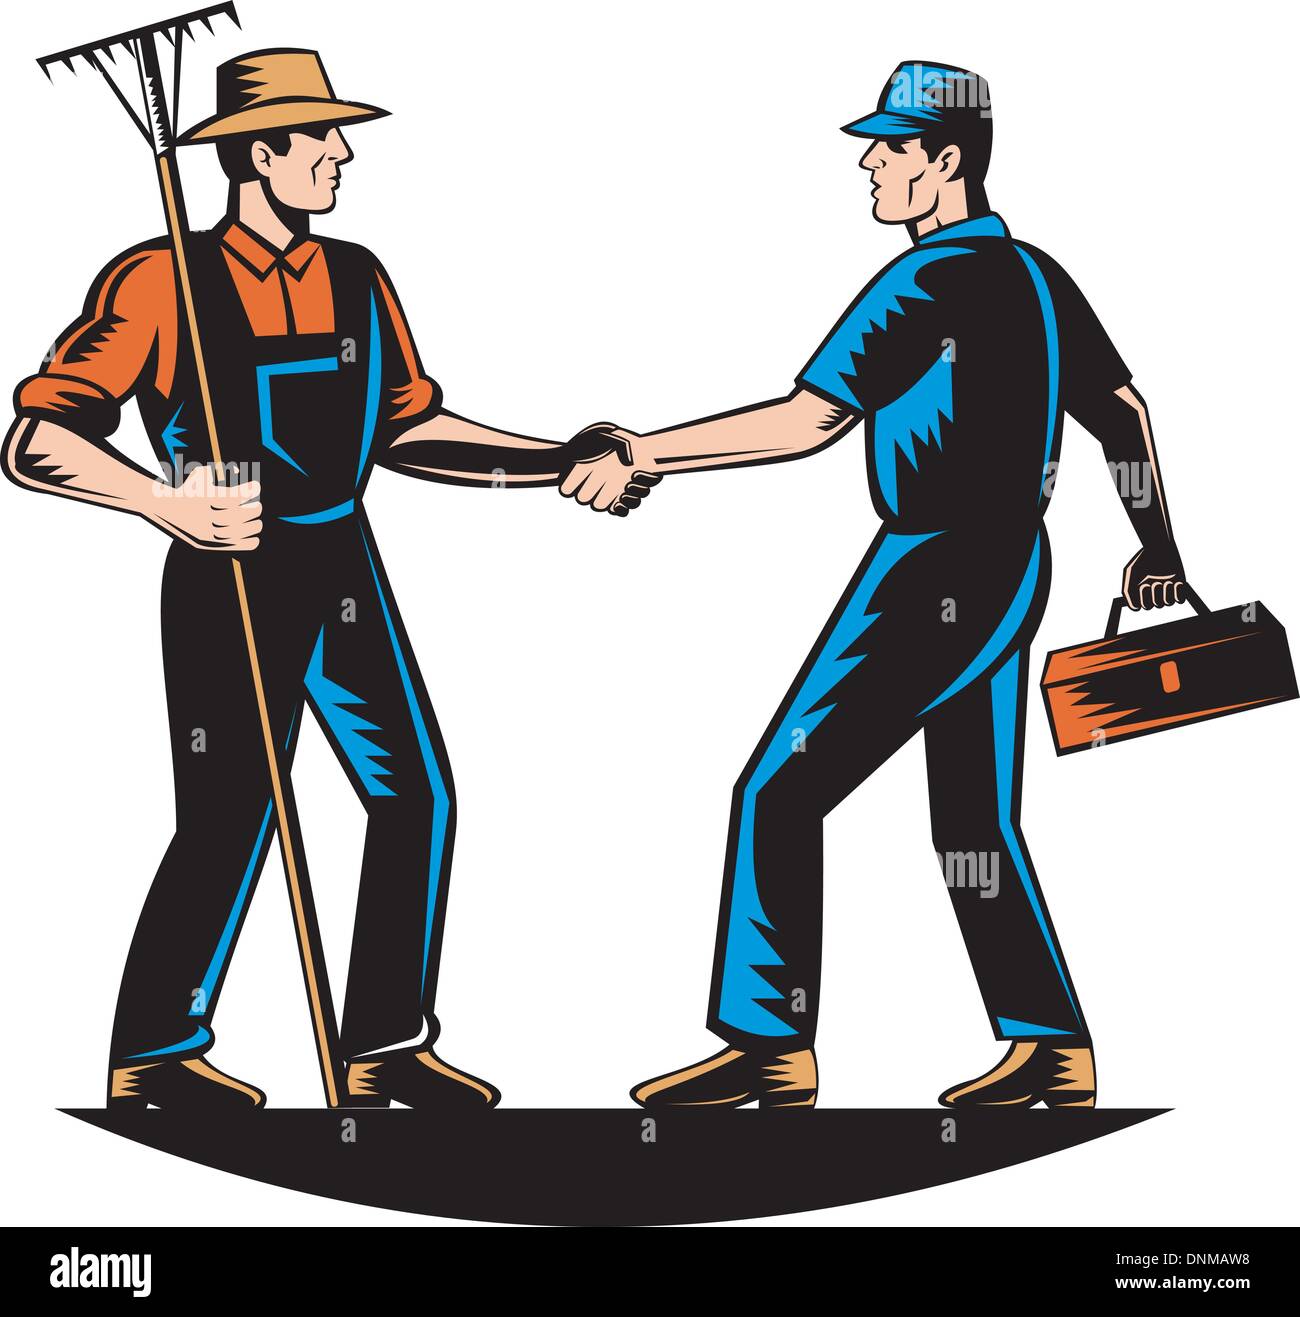 Vektor-Illustration ein Bauer und ein Handwerker, Mechaniker, Klempner oder Heimwerker Händeschütteln Stock Vektor